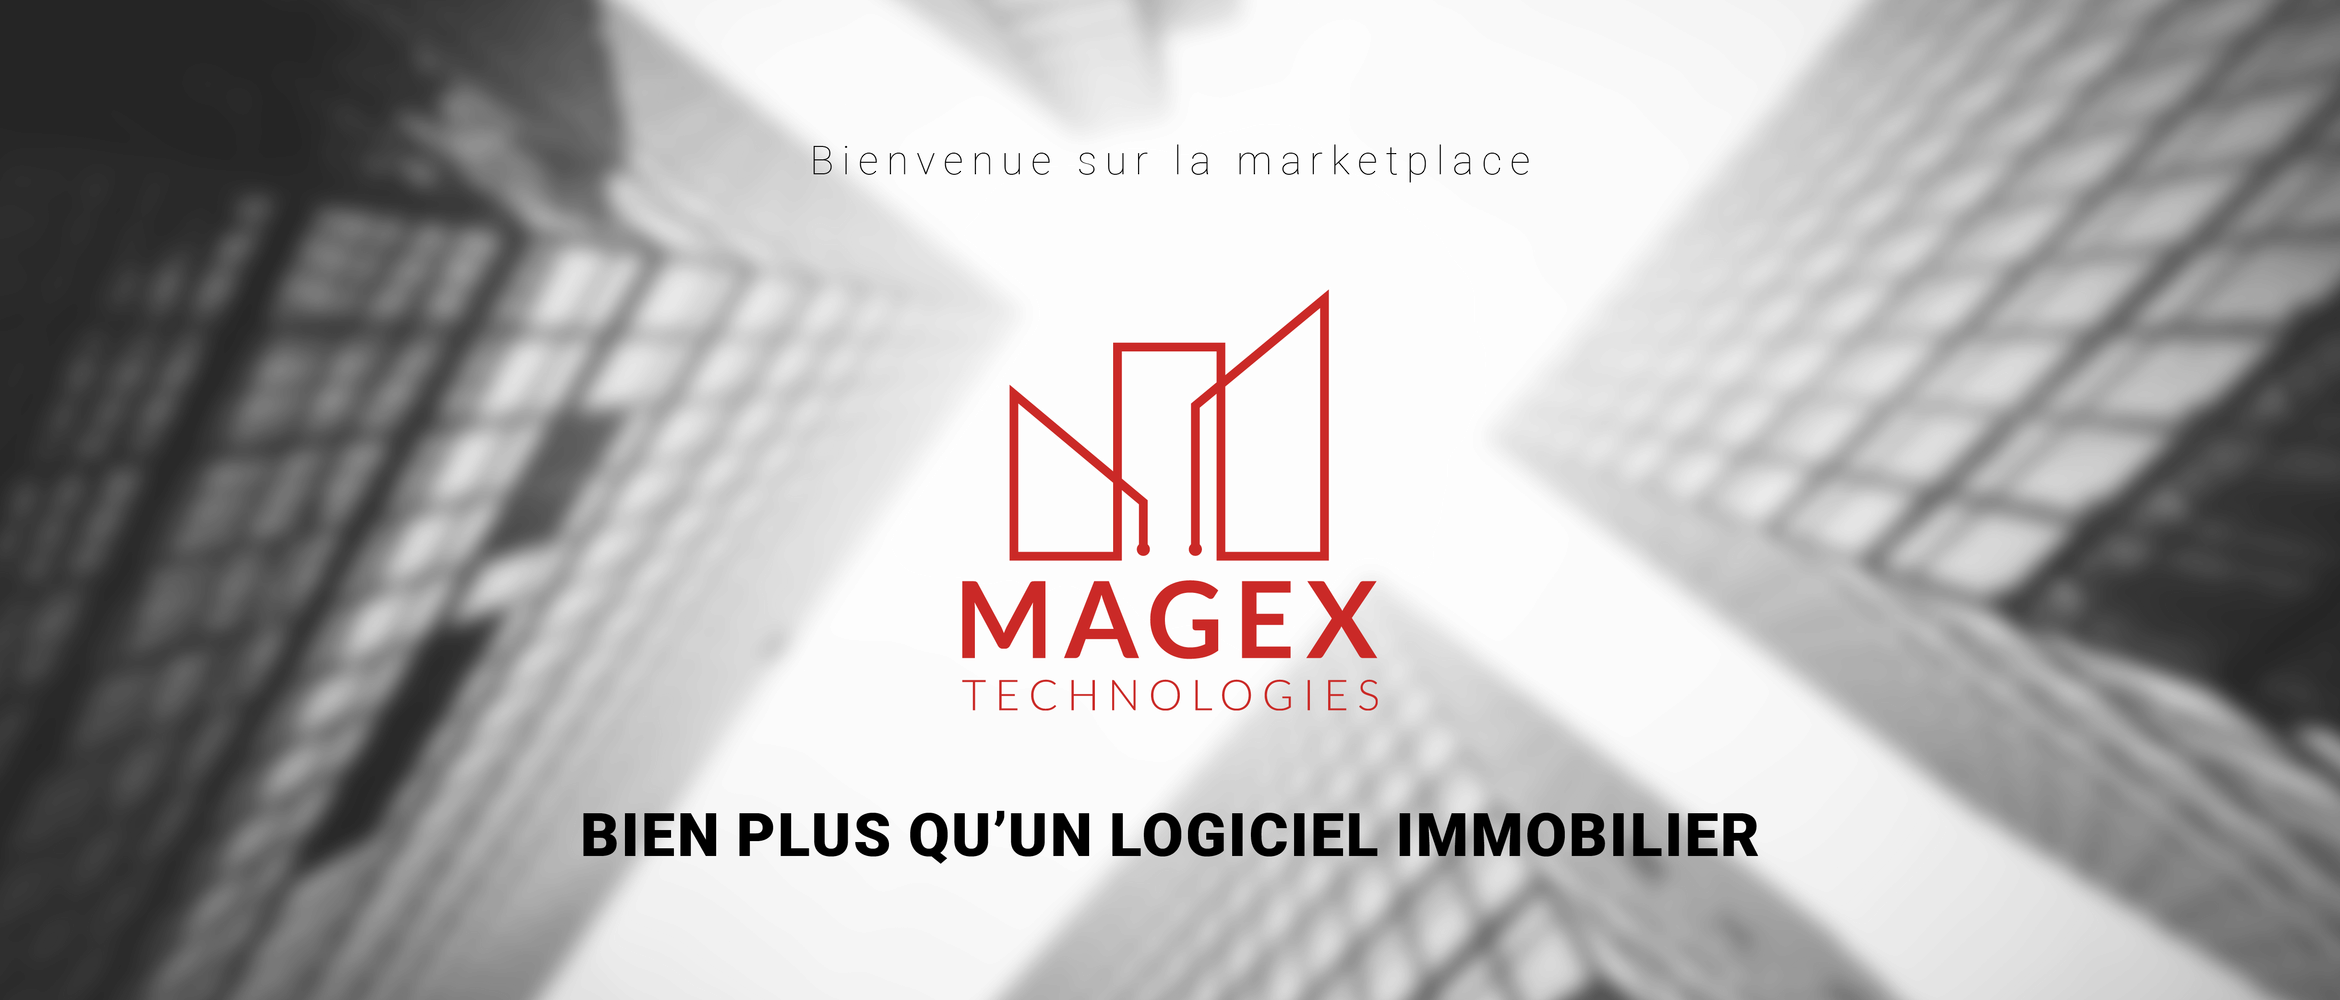 Bienvenue sur la marketplace Magex Technologies